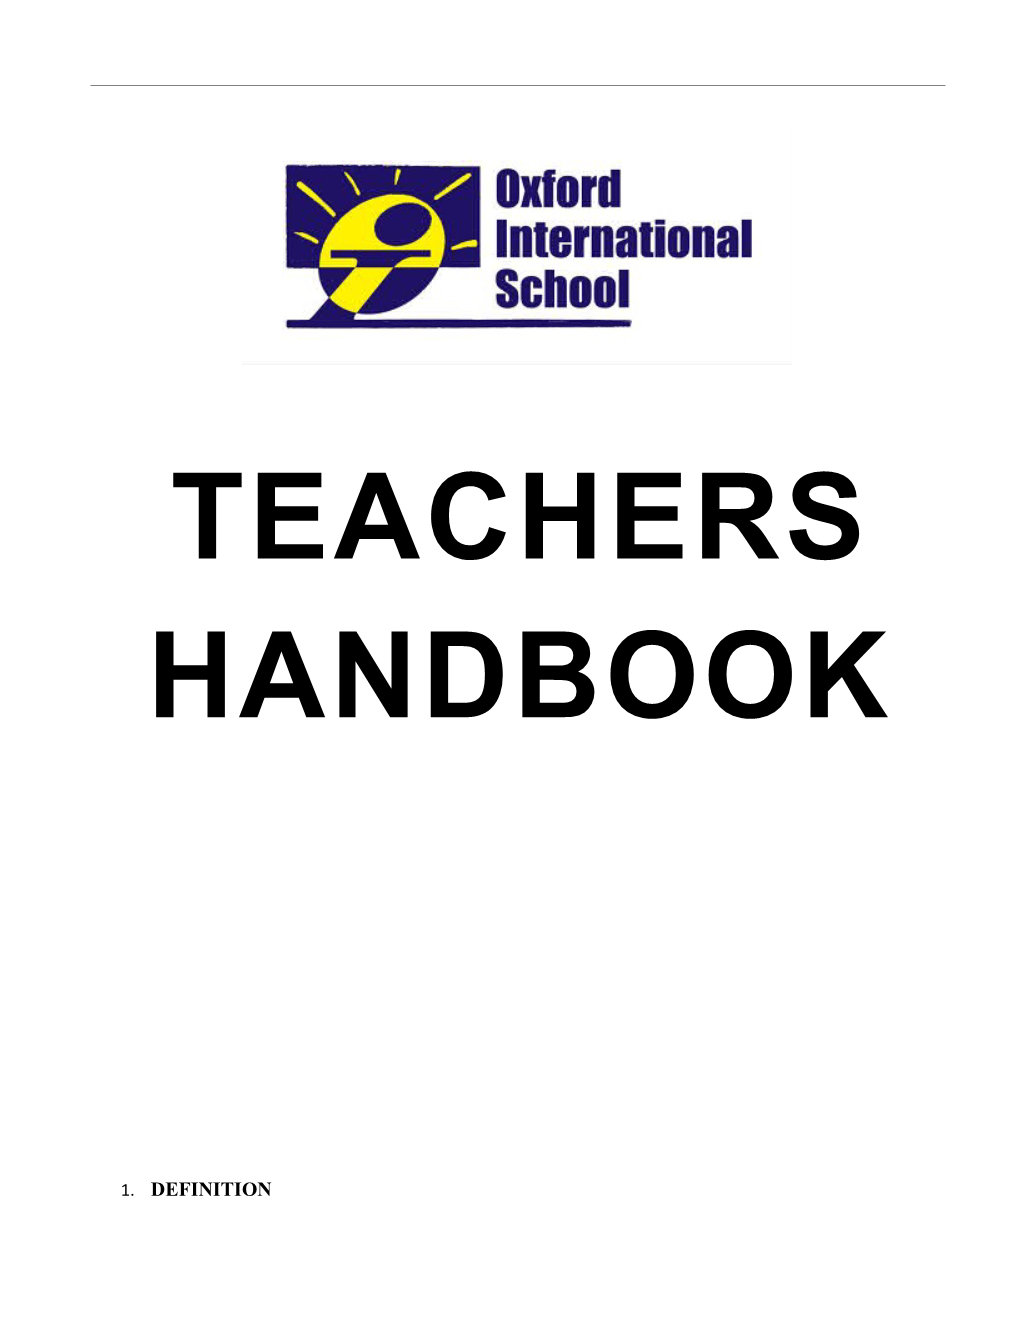 Teachers Handbook